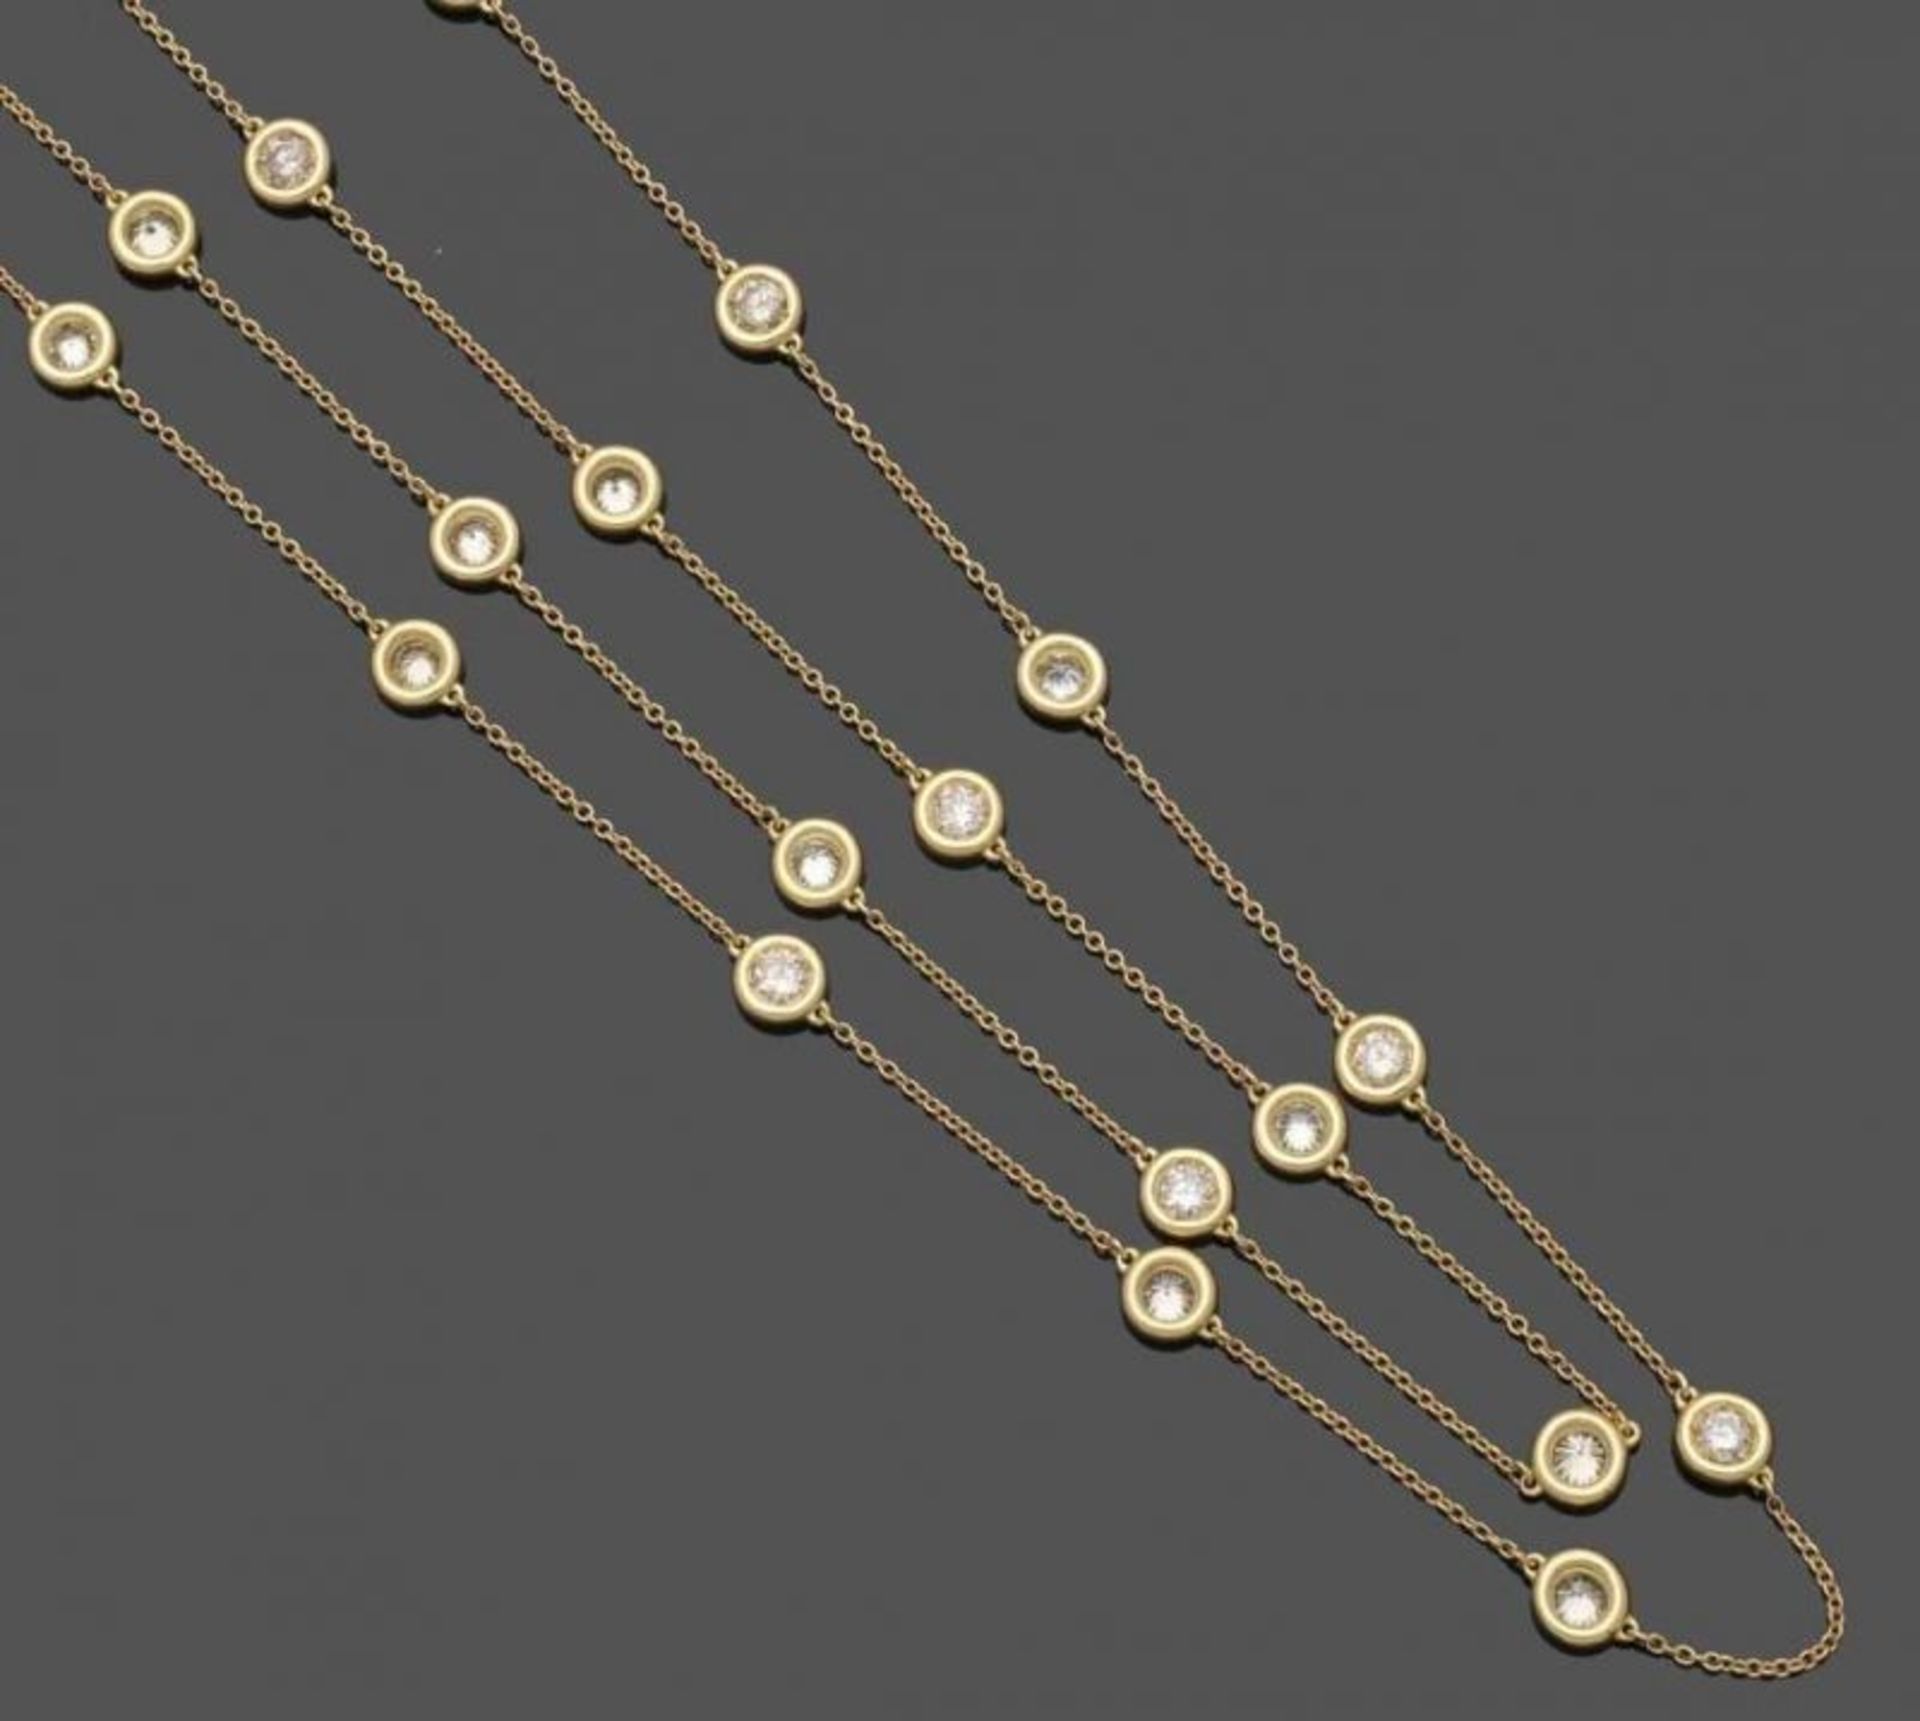 Langes Brillantcollier A long diamond necklace 750er GG, gestemp. 27 Brillanten zus. ca. 5,2 ct. - Bild 3 aus 4